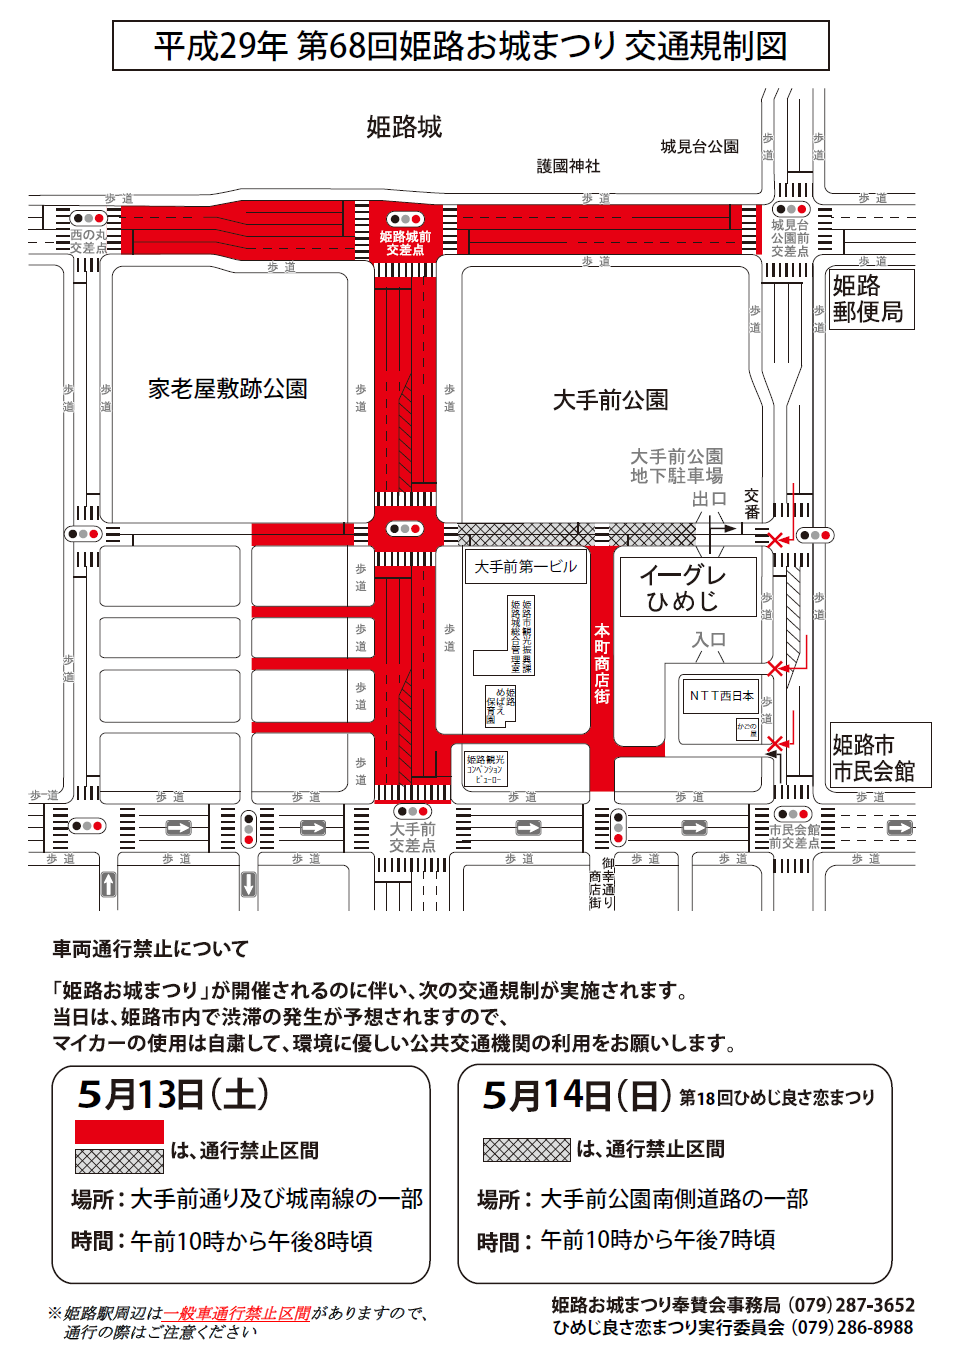 13日姫路城南側の交通規制について_c0369497_20372897.png